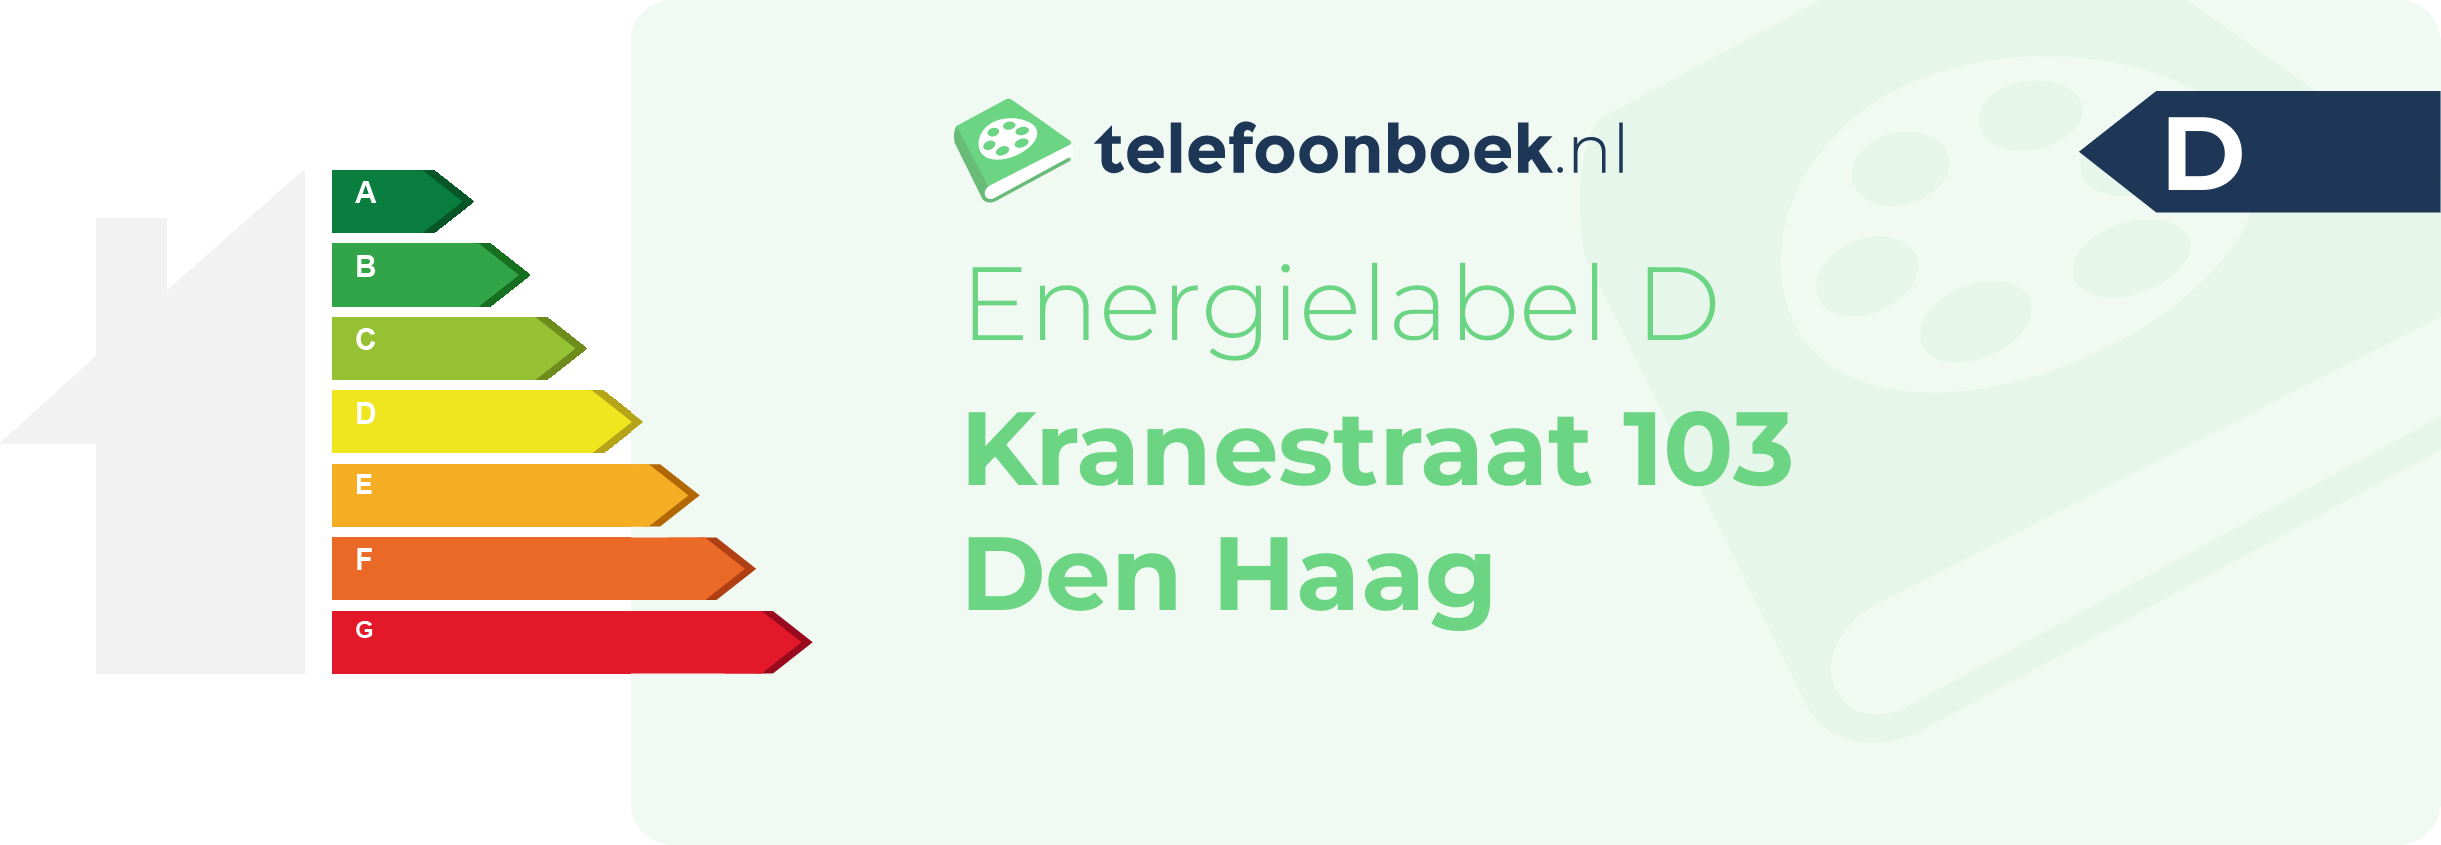 Energielabel Kranestraat 103 Den Haag